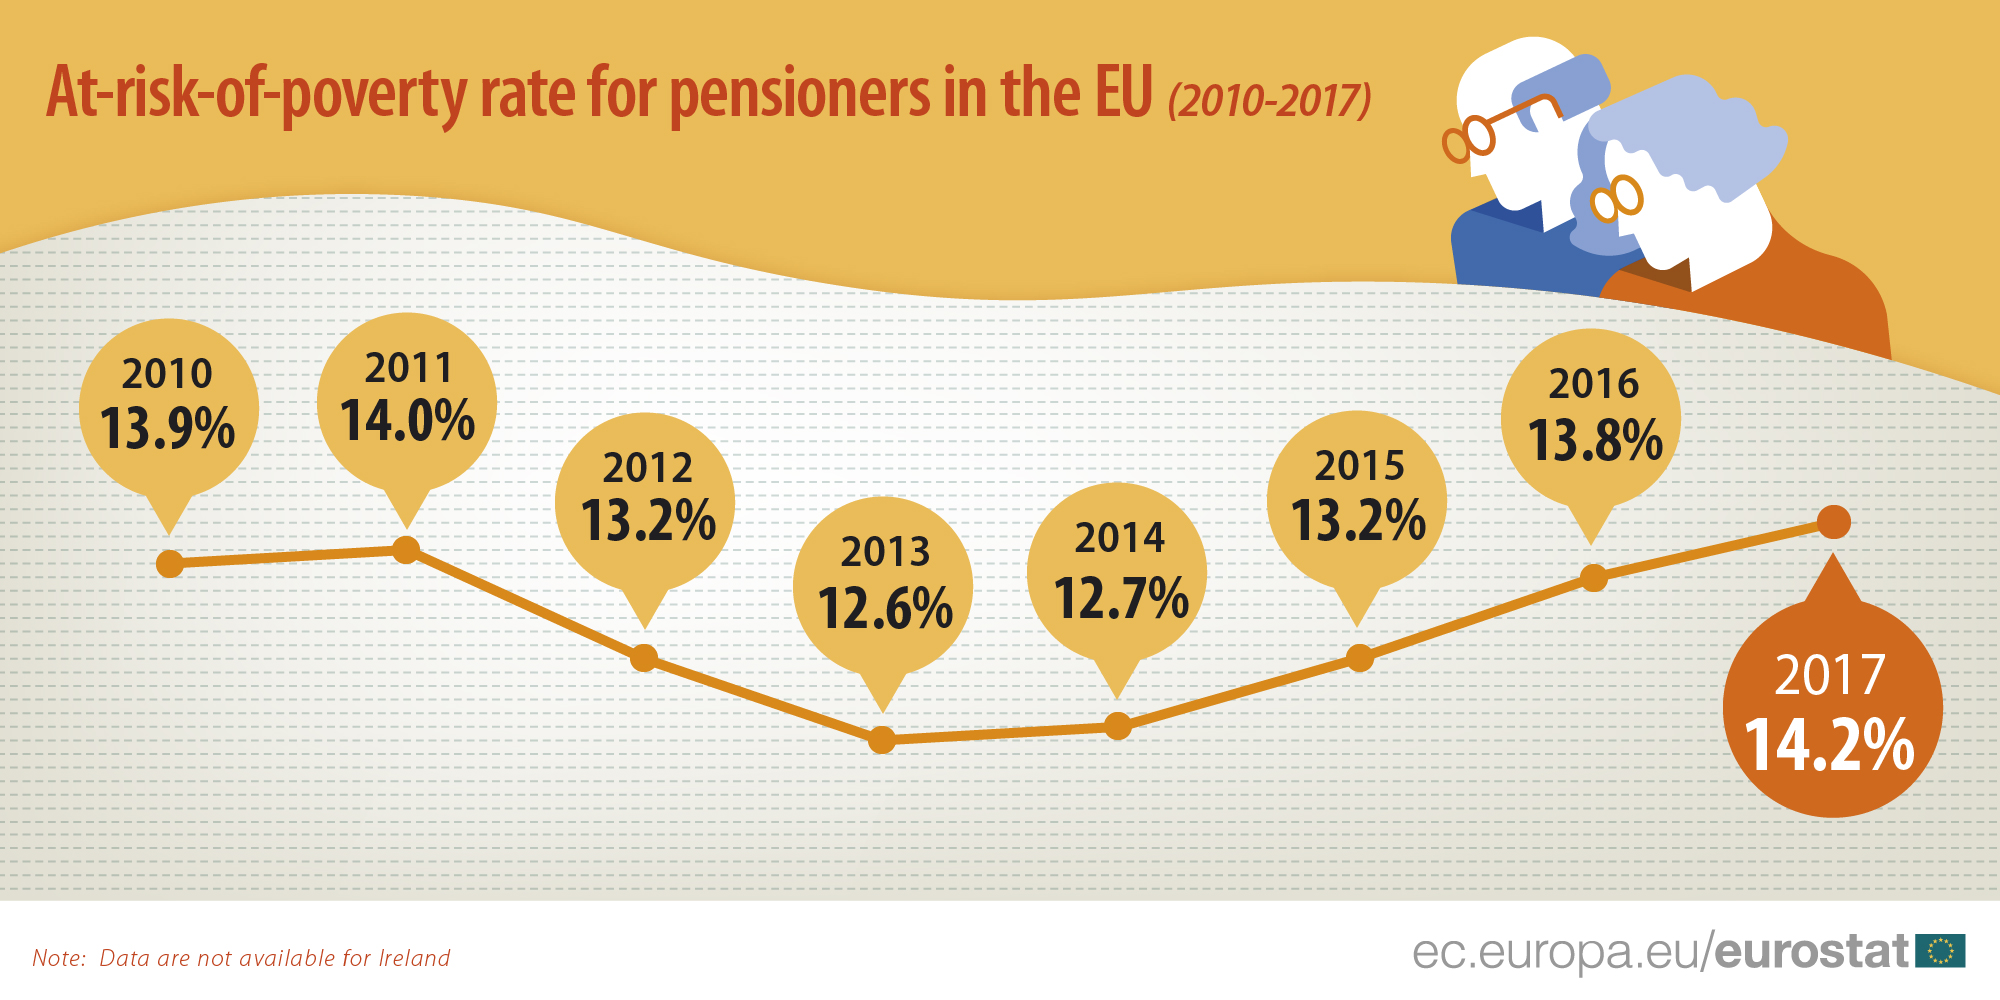 Rizik od siromaštva penzionera u EU u porastu 2